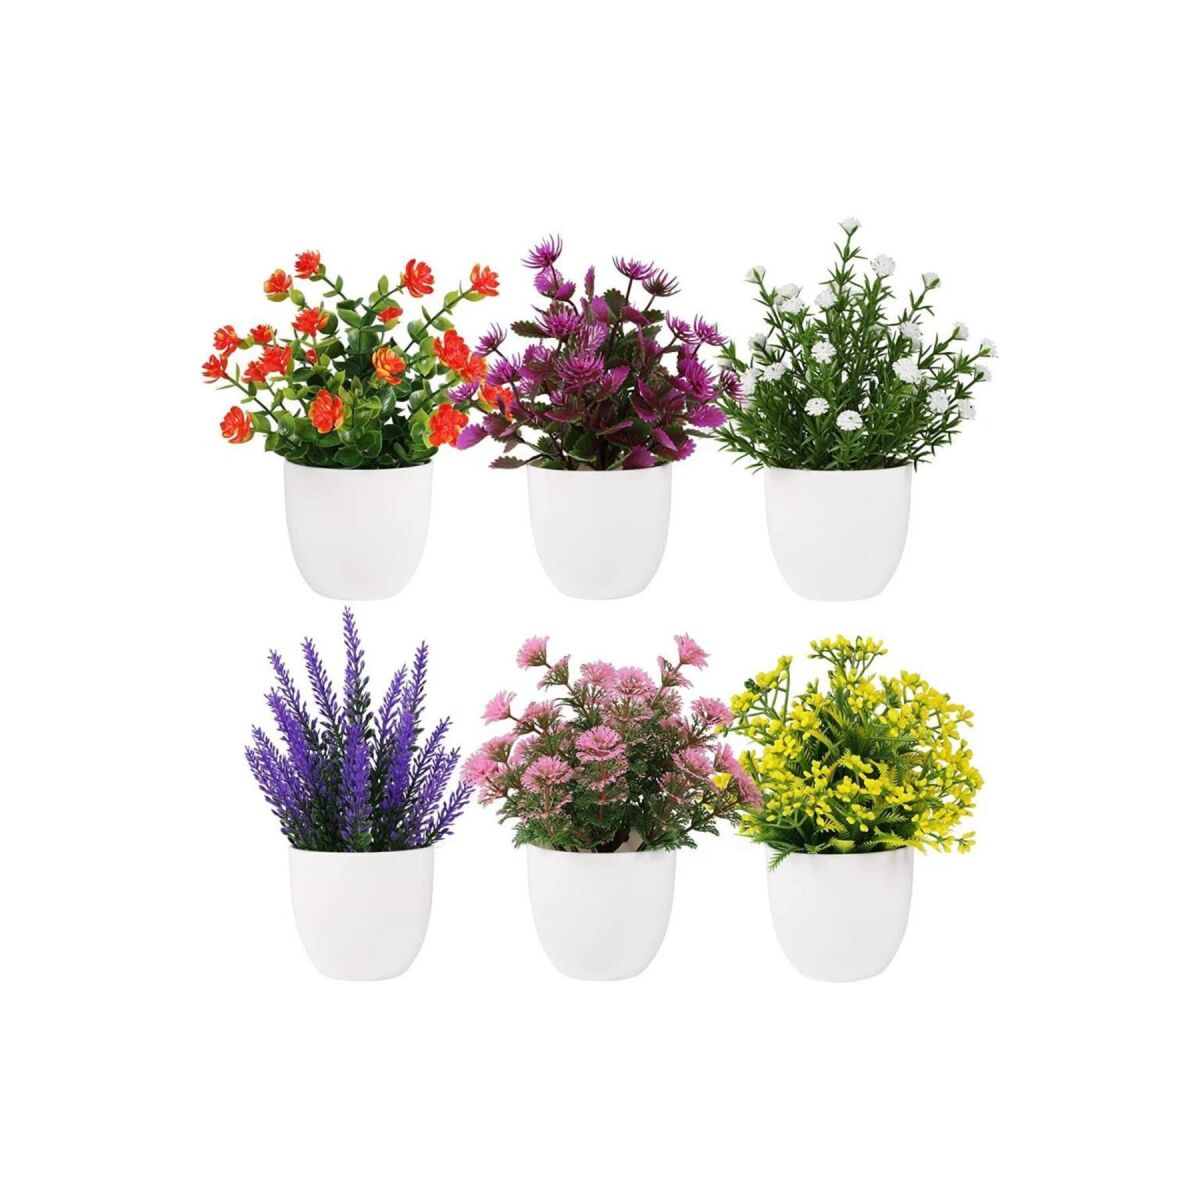 6Lı Set Yapay Çiçek Beyaz Saksıda 6 Çeşit Renkli Çiçekler